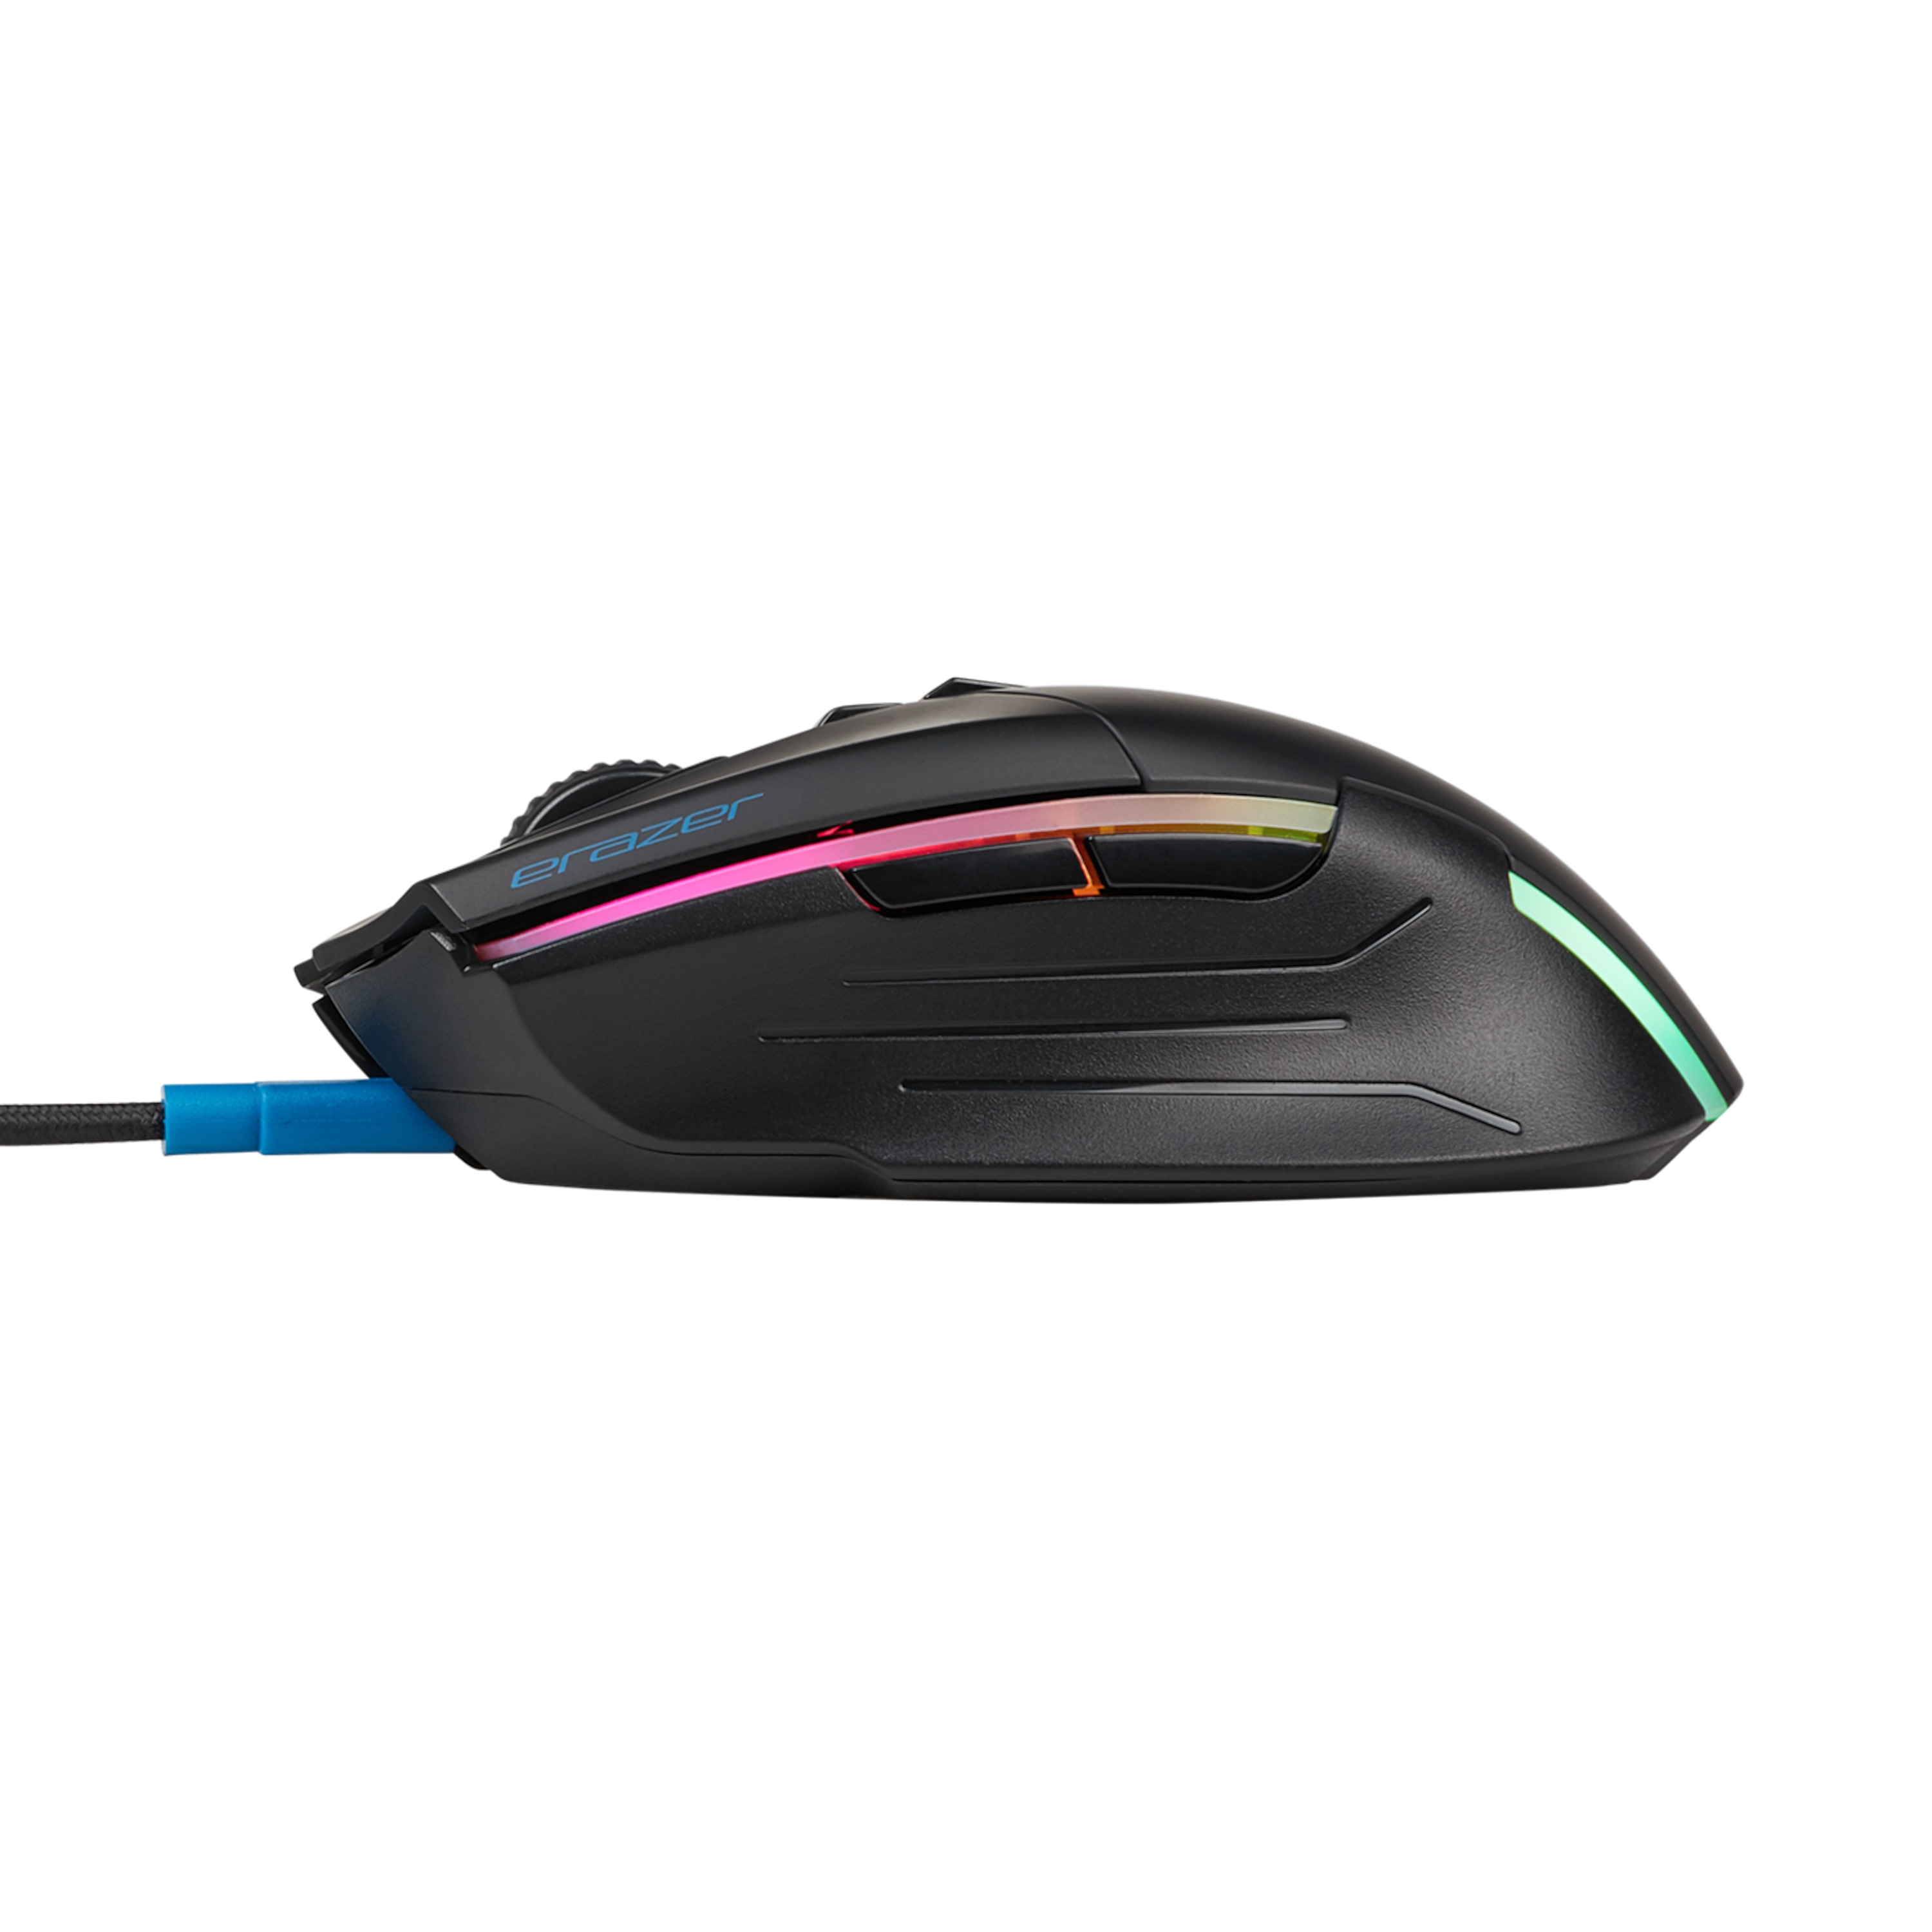 MEDION® ERAZER® X81035 Gaming Maus, PixArt-Sensor, wahlweise kabelgebundener oder -loser Betrieb möglich, Li-Polymer Akku, DPI Profile, RGB Beleuchtung, ergonomisch